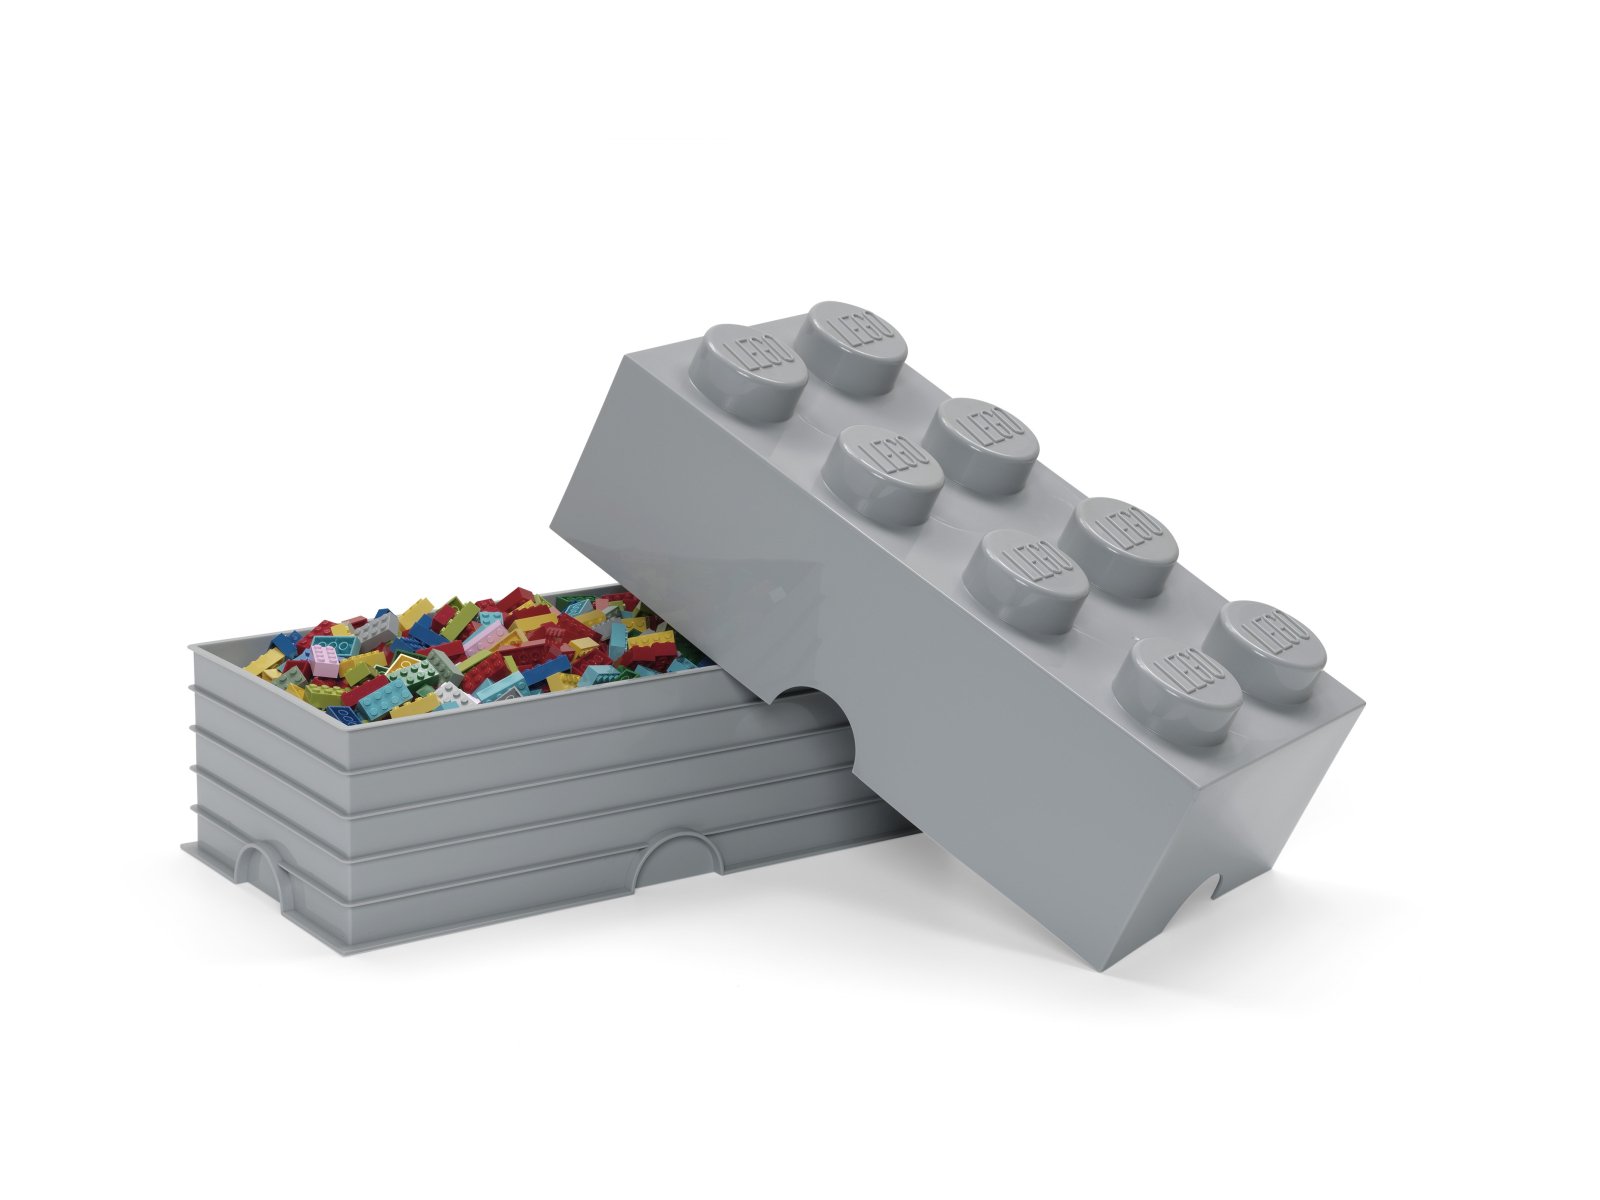 LEGO 5007268 Pudełko w kształcie klocka z ośmioma wypustkami – kamiennoszare